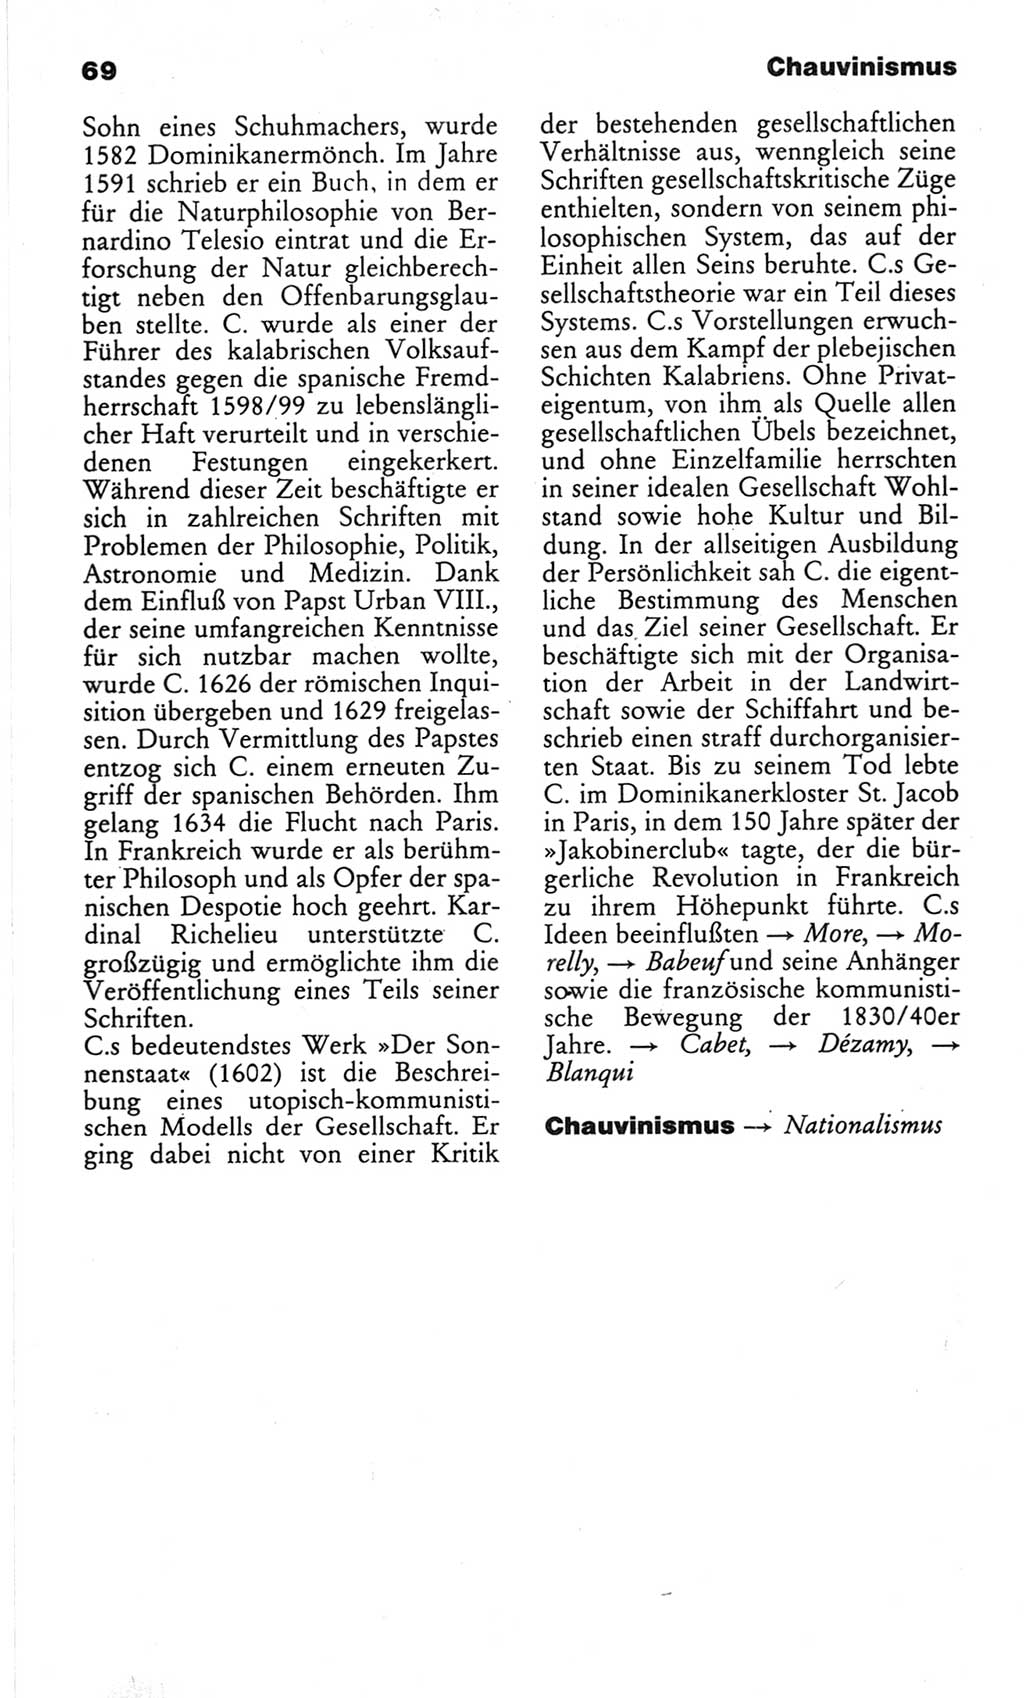 Wörterbuch des wissenschaftlichen Kommunismus [Deutsche Demokratische Republik (DDR)] 1982, Seite 69 (Wb. wiss. Komm. DDR 1982, S. 69)